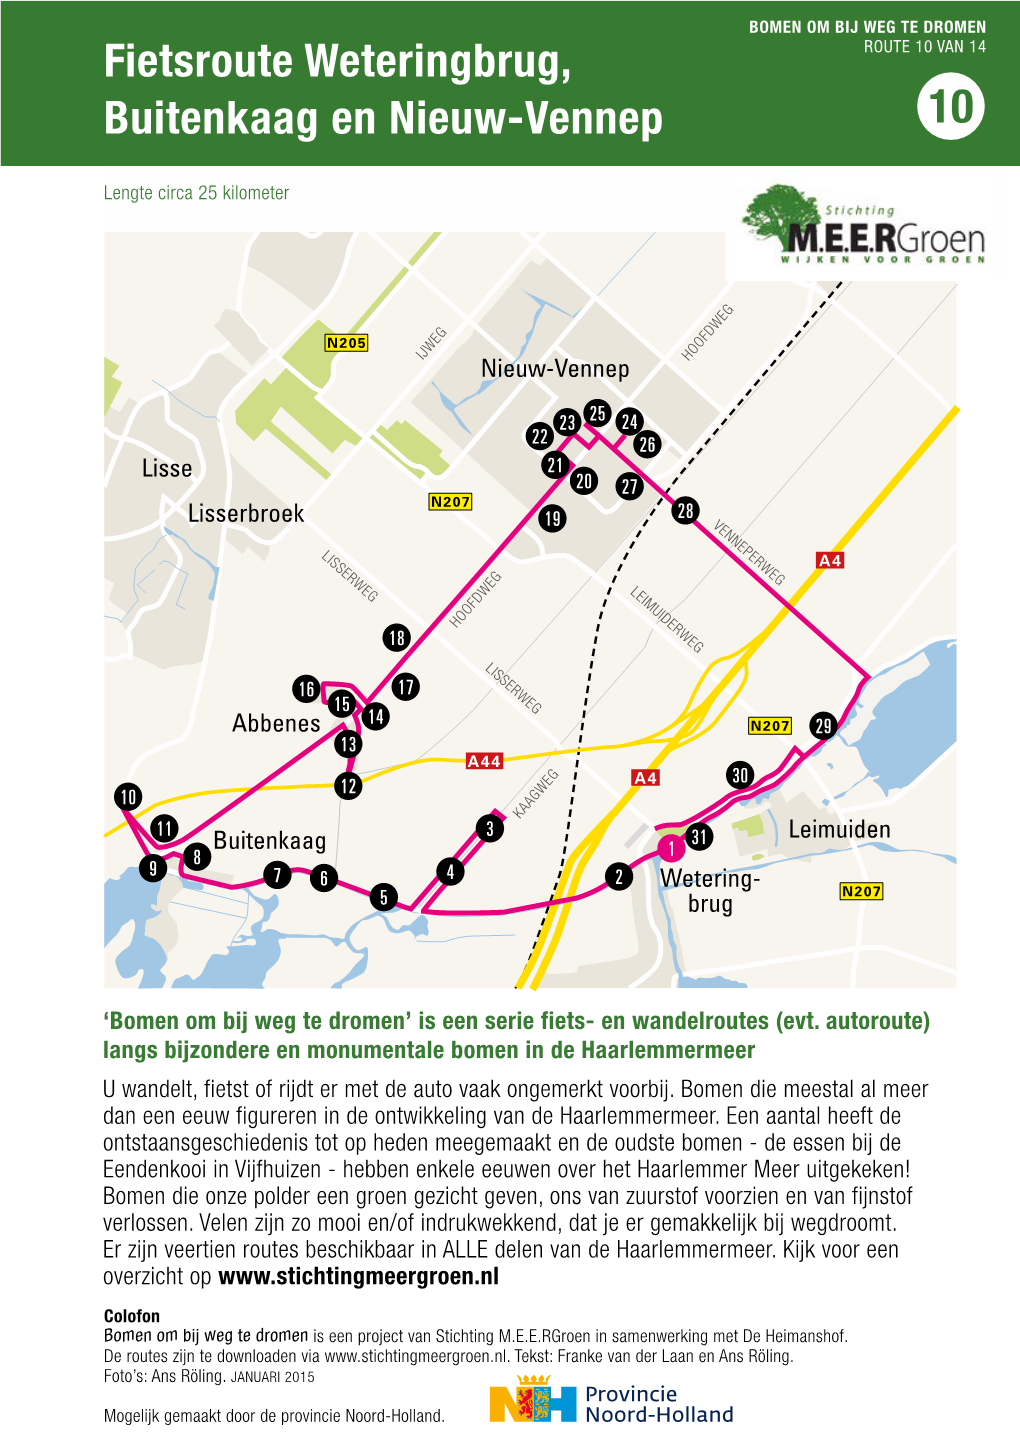 Fietsroute Weteringbrug, Buitenkaag En Nieuw-Vennep 10